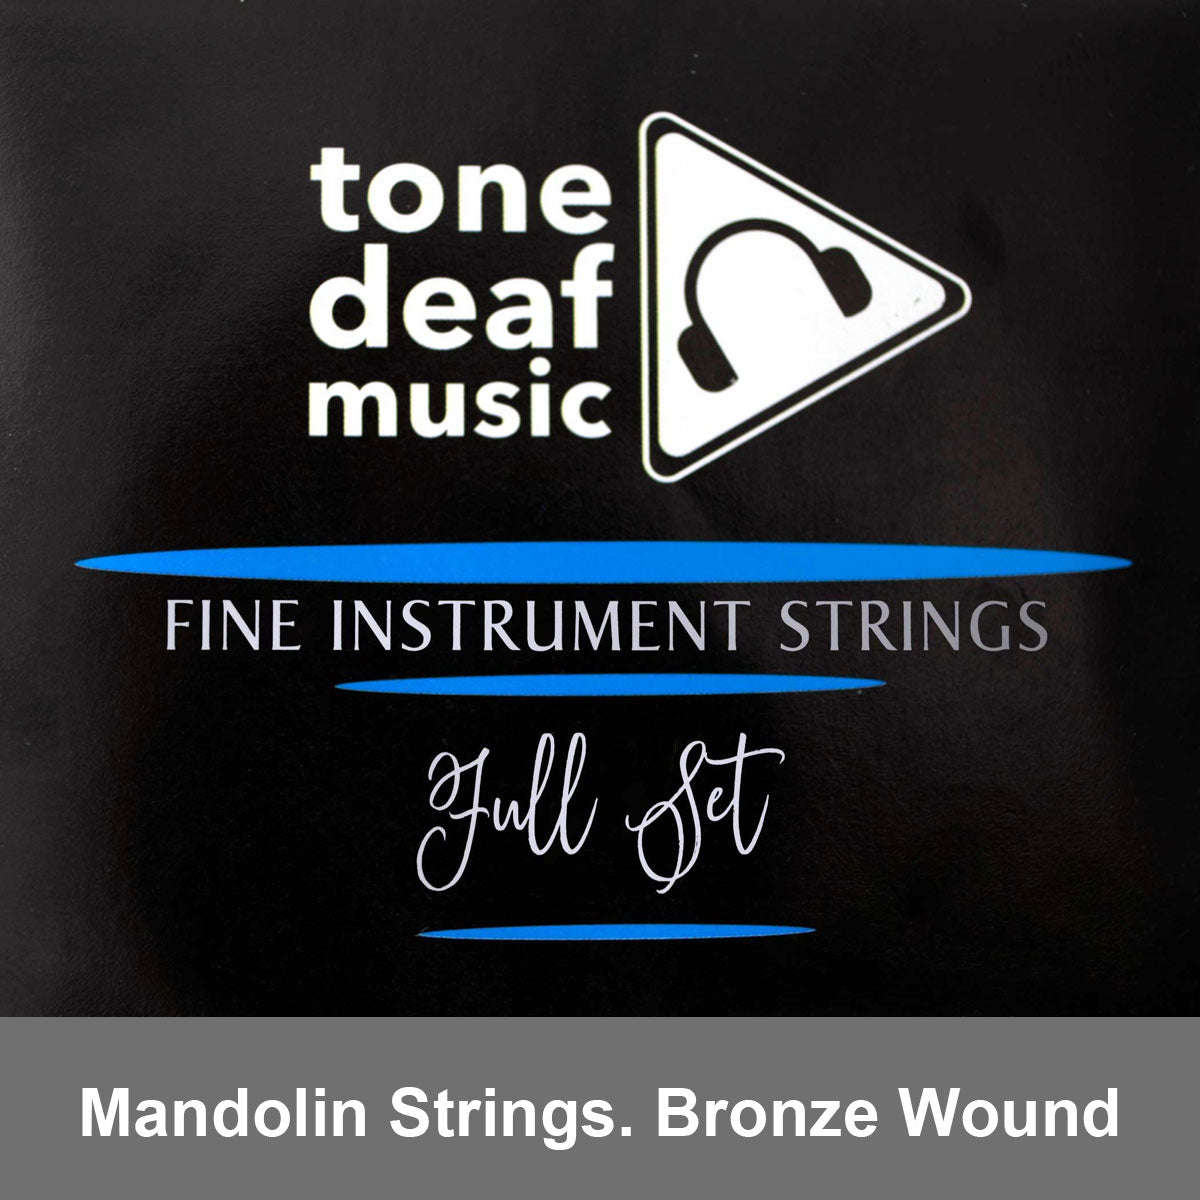 Mandolin strings - bronze wound